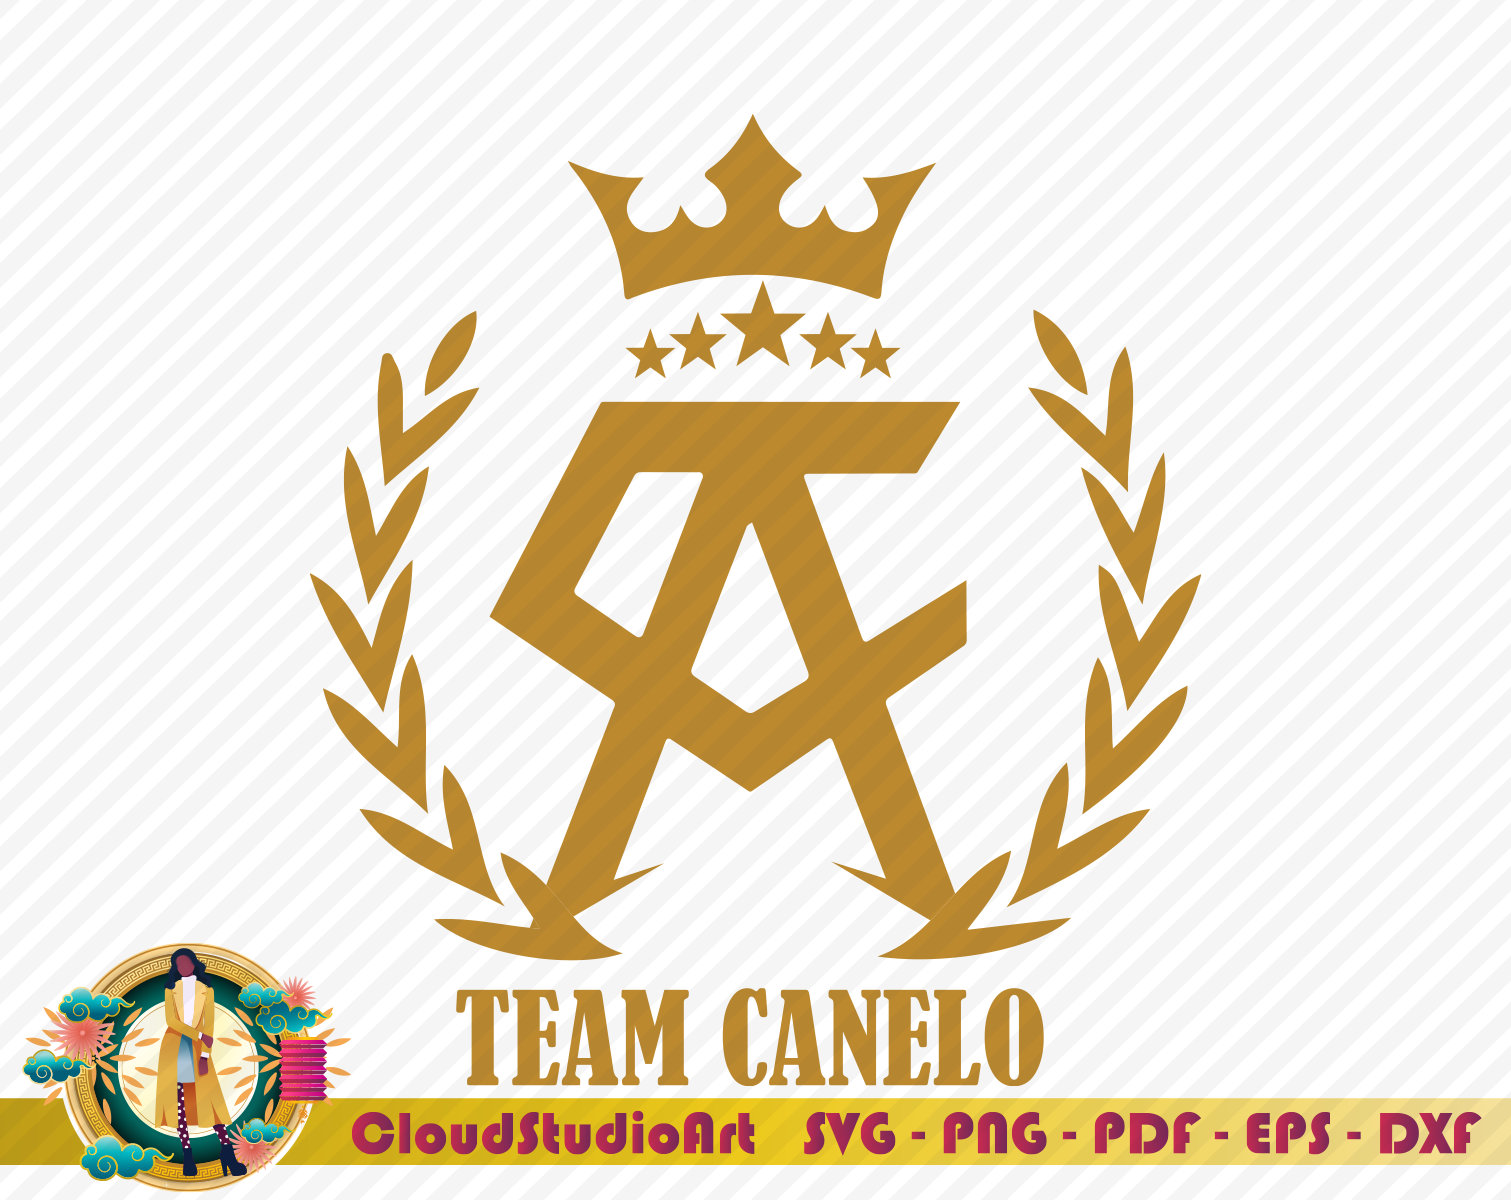 Saul Canelo Alvarez Logo' Men's Pique Polo Shirt